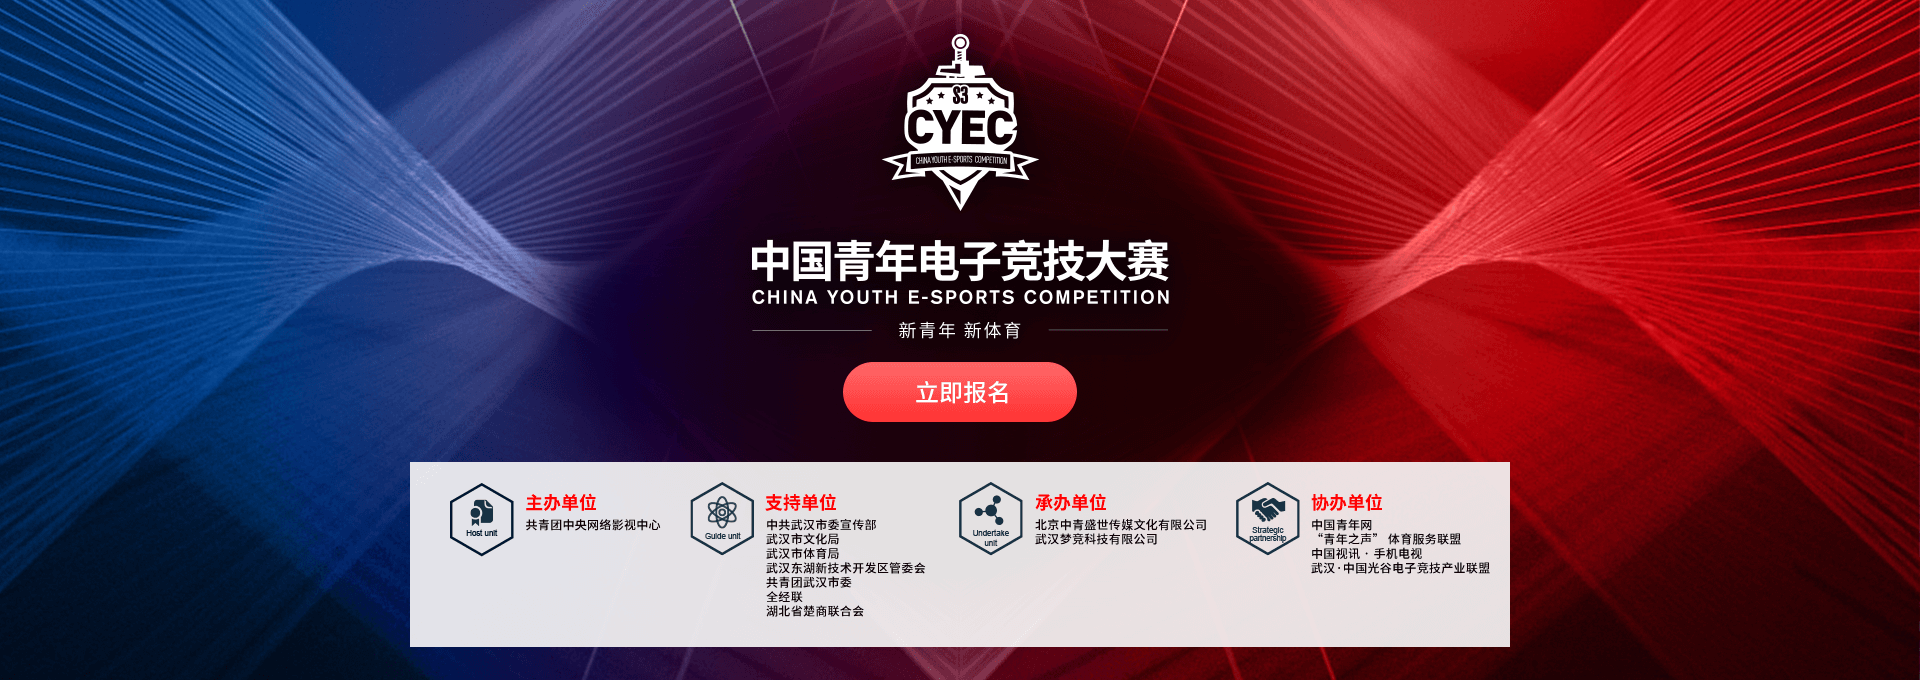 中国青年电子竞技大赛S3赛季